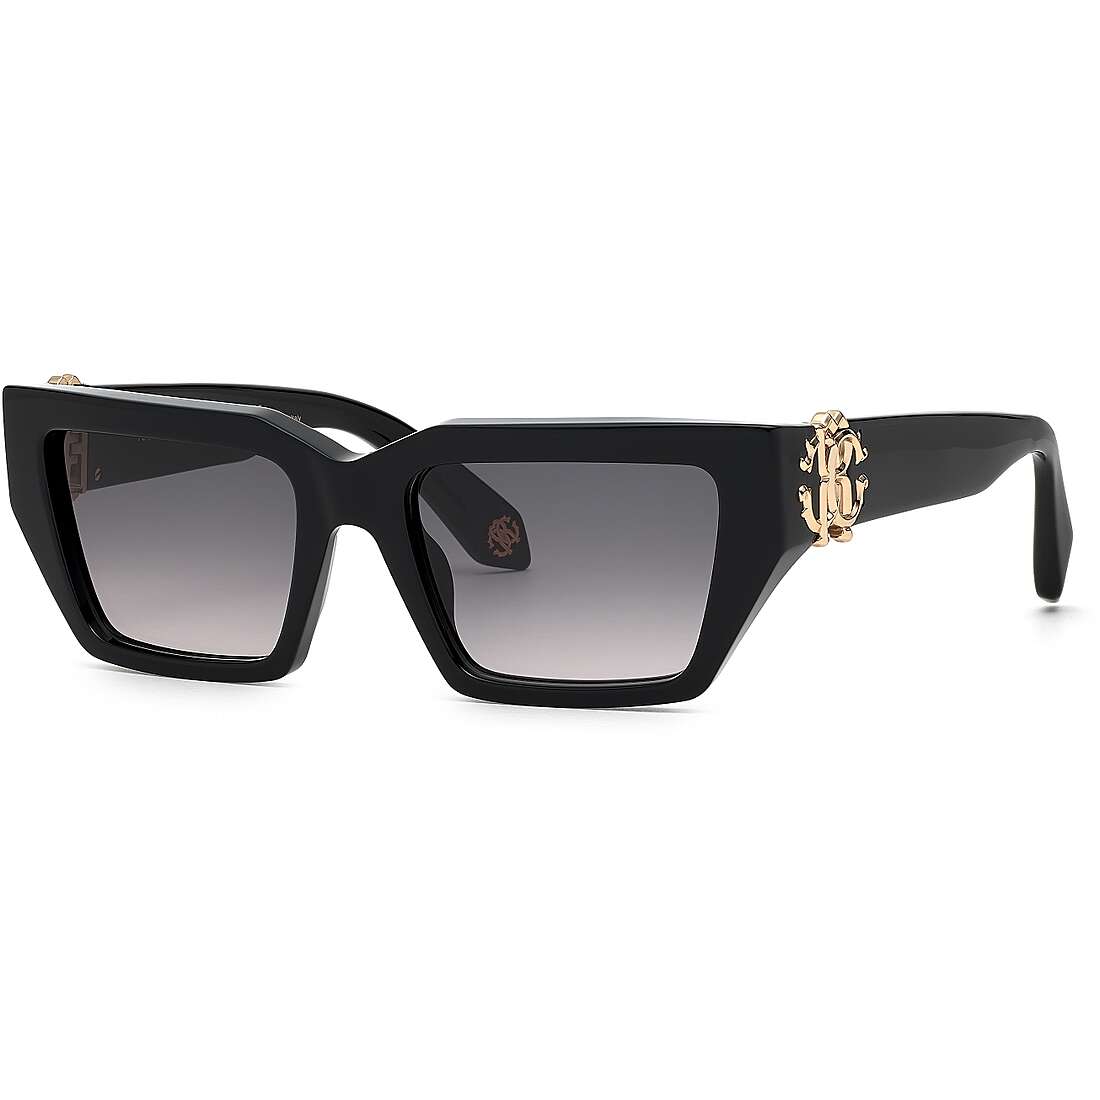 occhiali da sole Roberto Cavalli neri forma Quadrata SRC016M0700